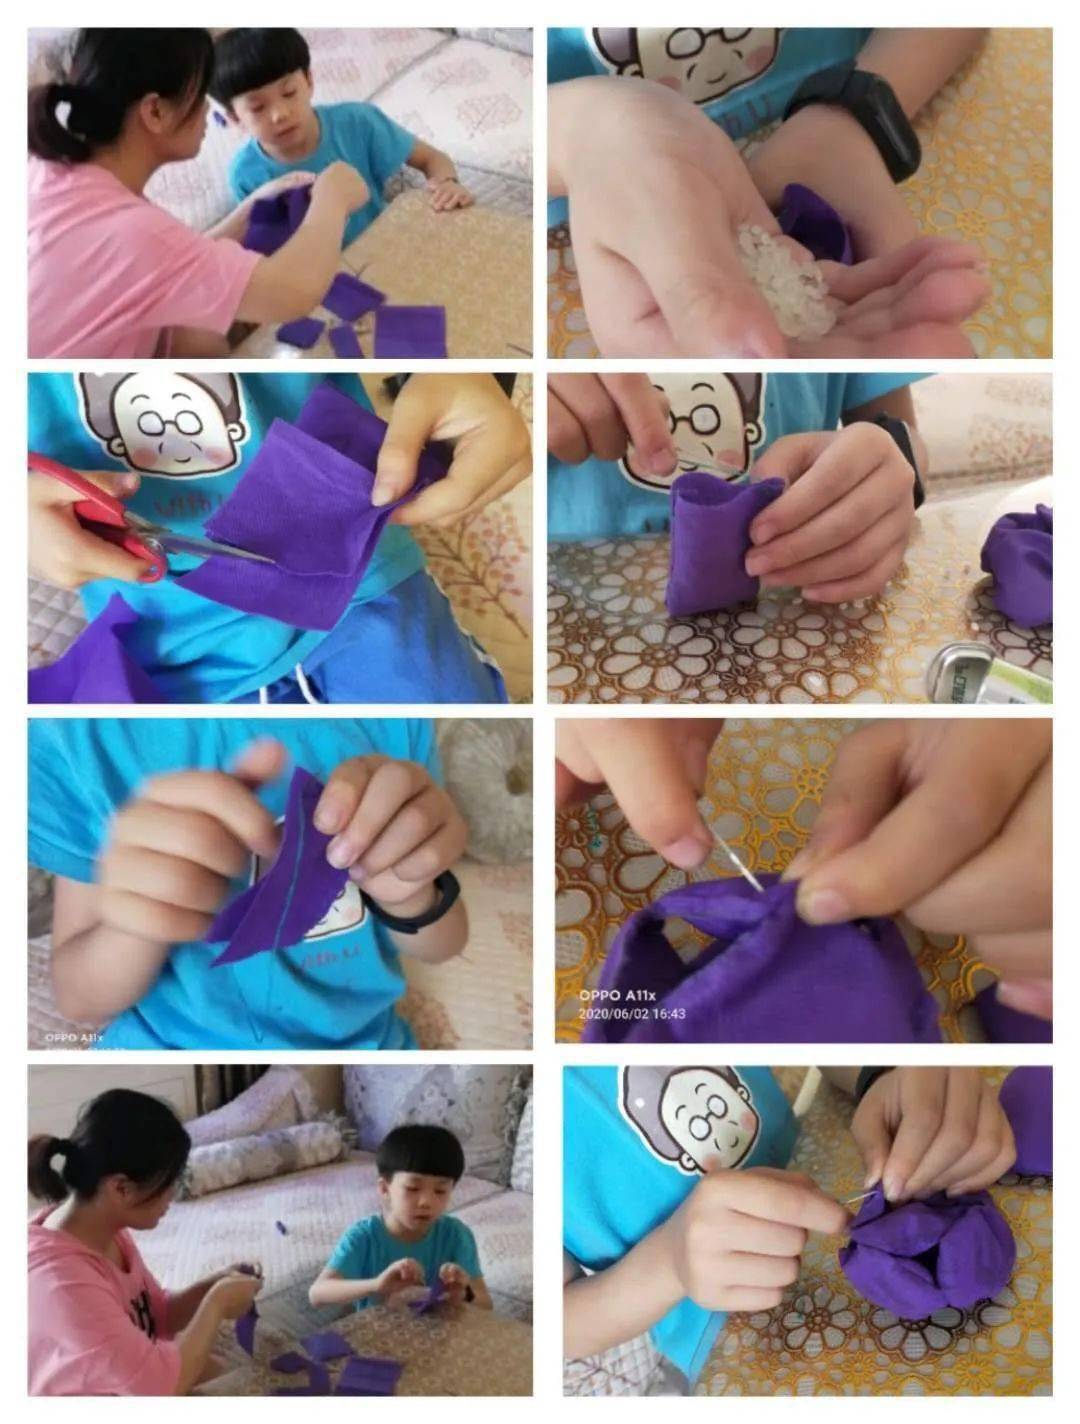 缝沙包的制作过程图片